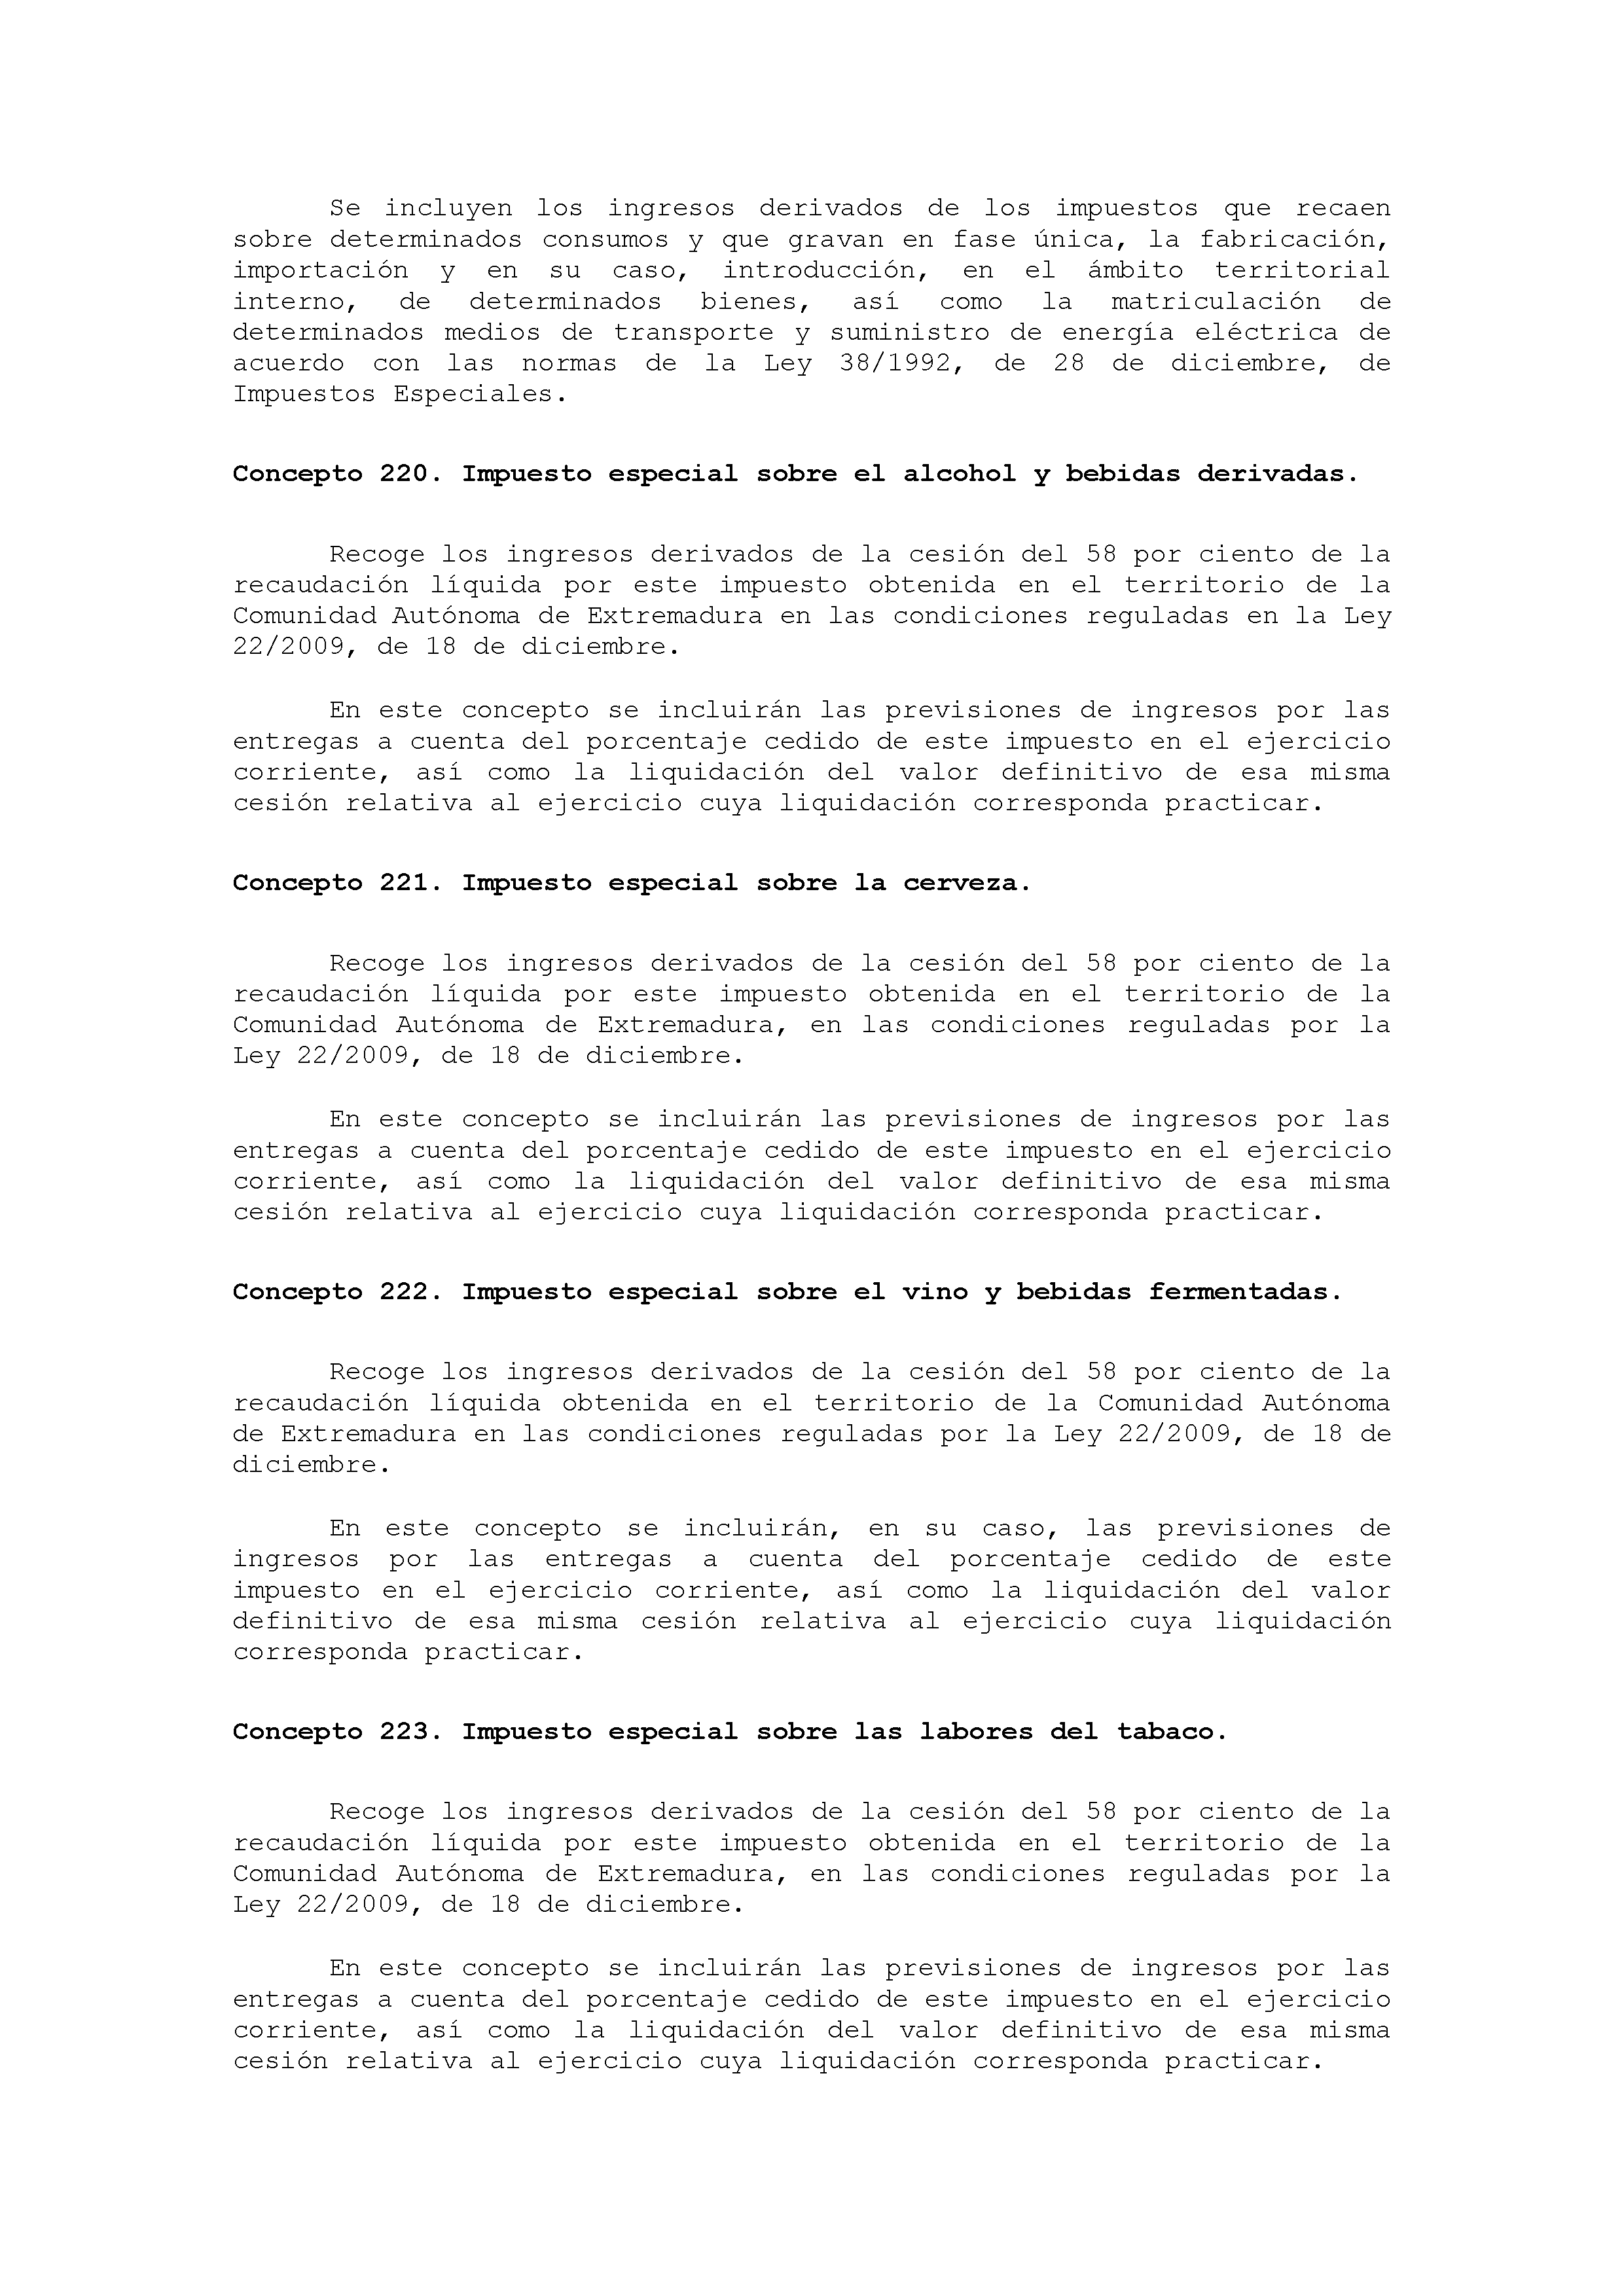 ANEXO VIII CÓDIGO DE LA CLASIFICACIÓN ECONÓMICA DE LOS INGRESOS PÚBLICOS Pag 6